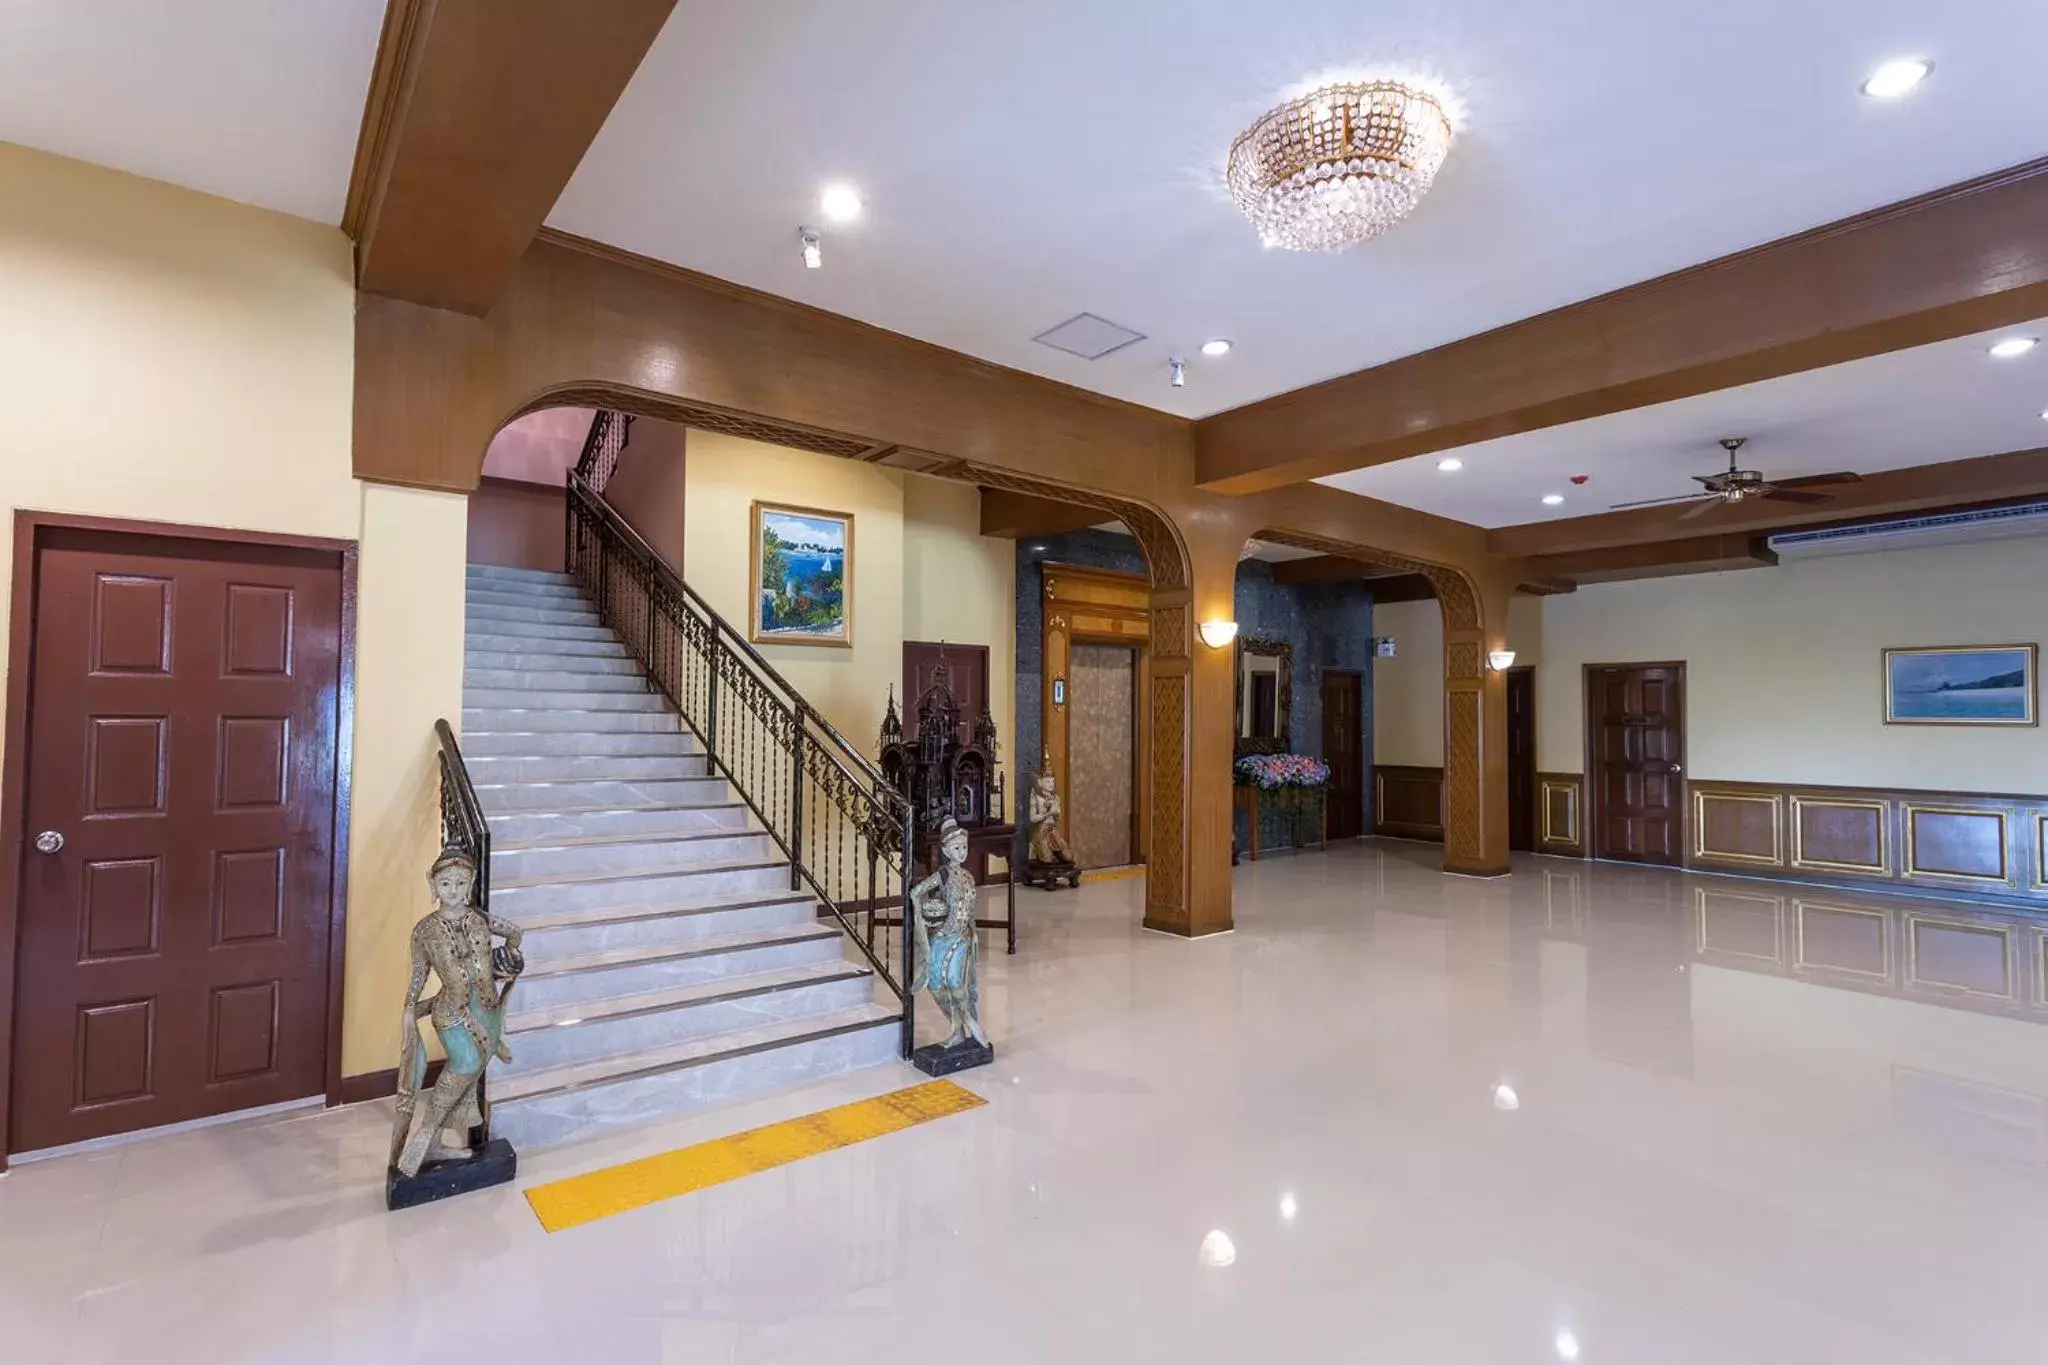 Area and facilities, Lobby/Reception in Sabai Inn